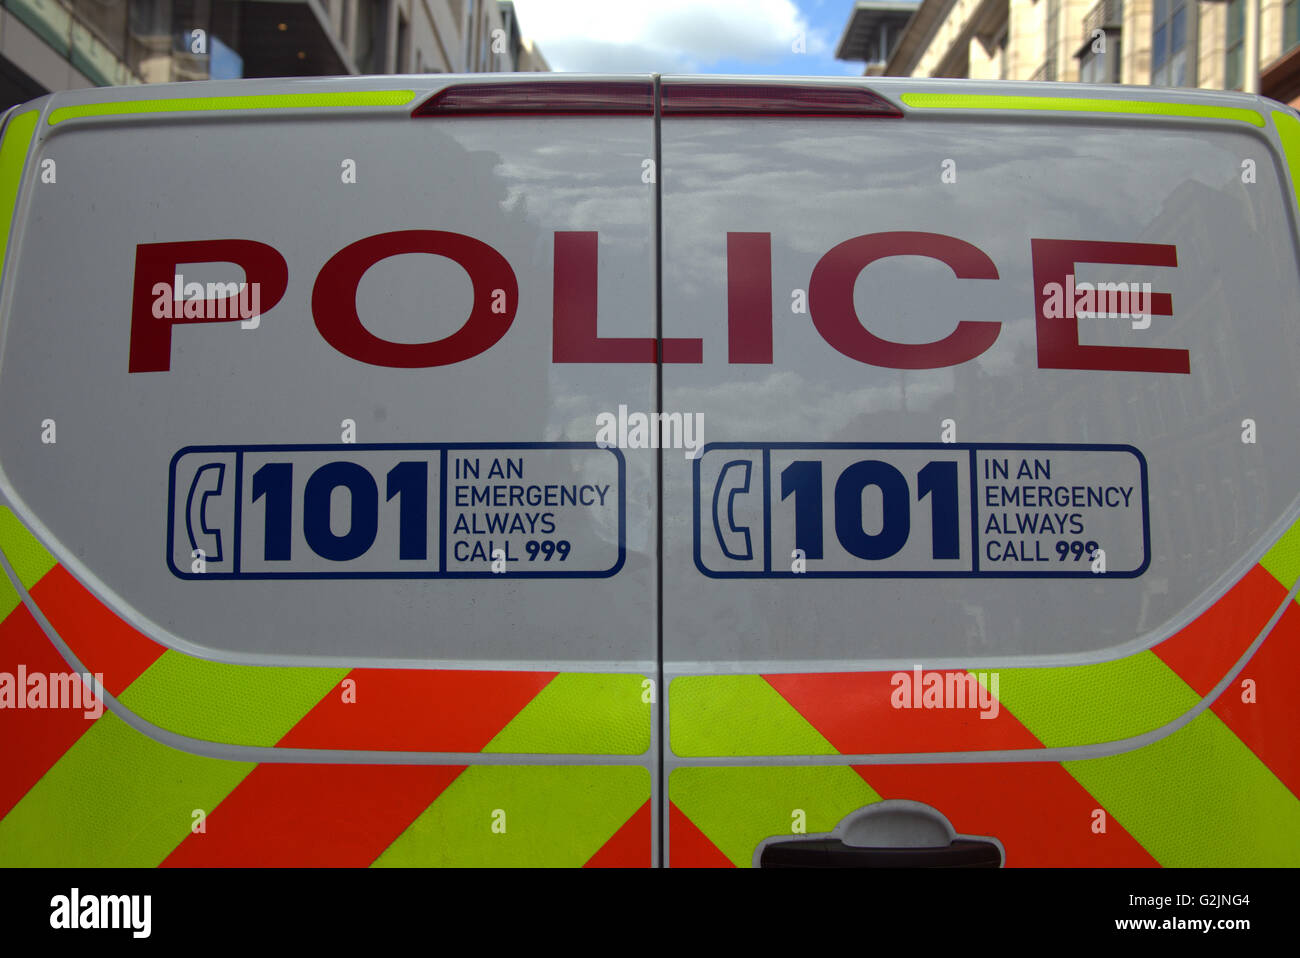 Polizei van 101 Rufzeichen Glasgow, Scotland, UK. Stockfoto